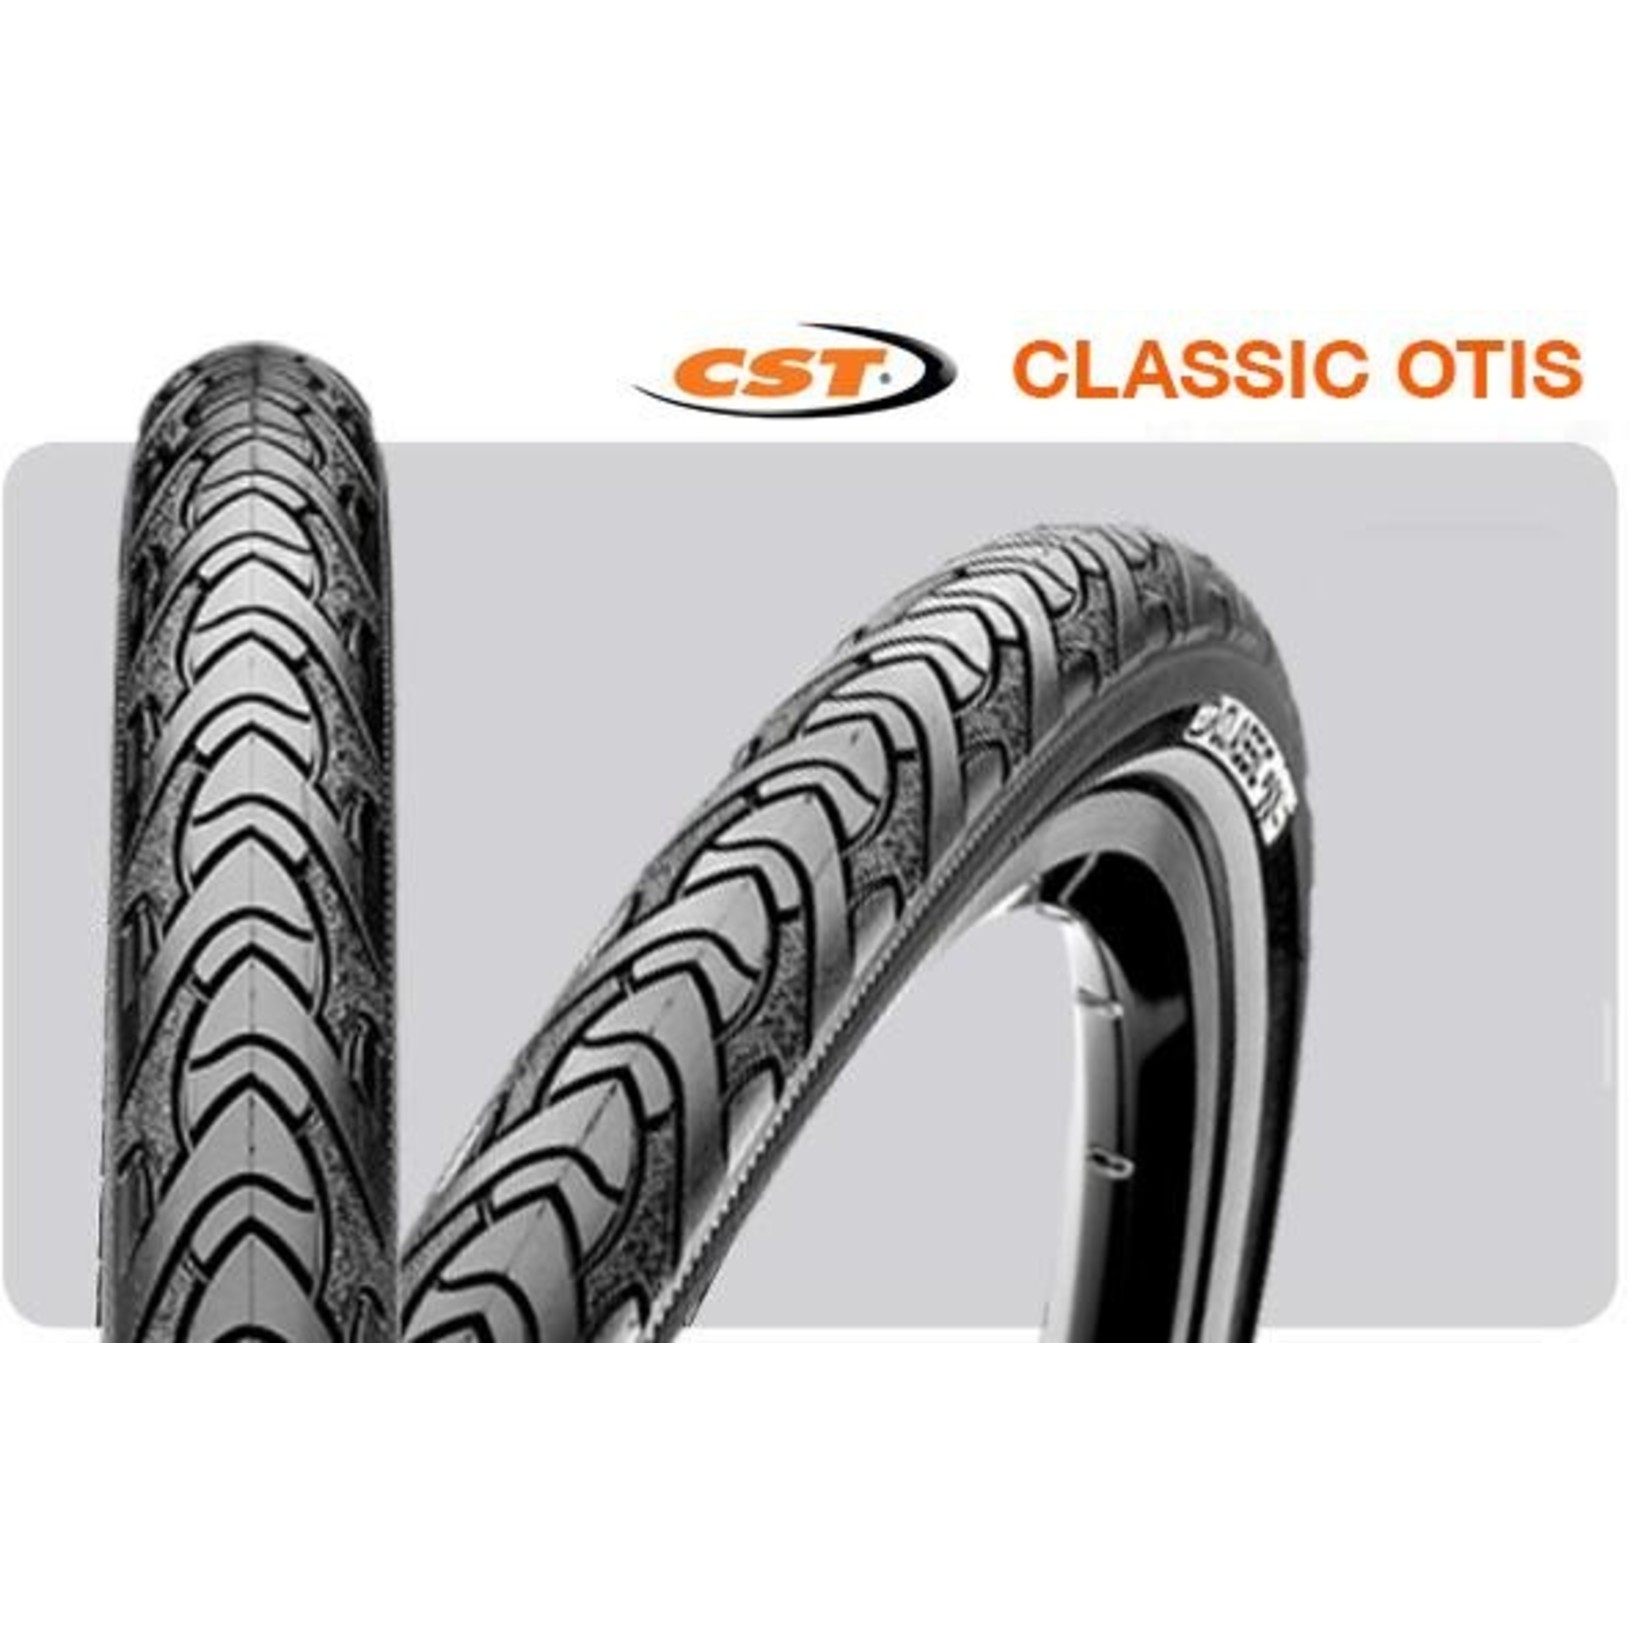 CST CST Bike Tyre 700 X 32 Hybrid - Classic Otis C177 - Puncture Resistant 3mm